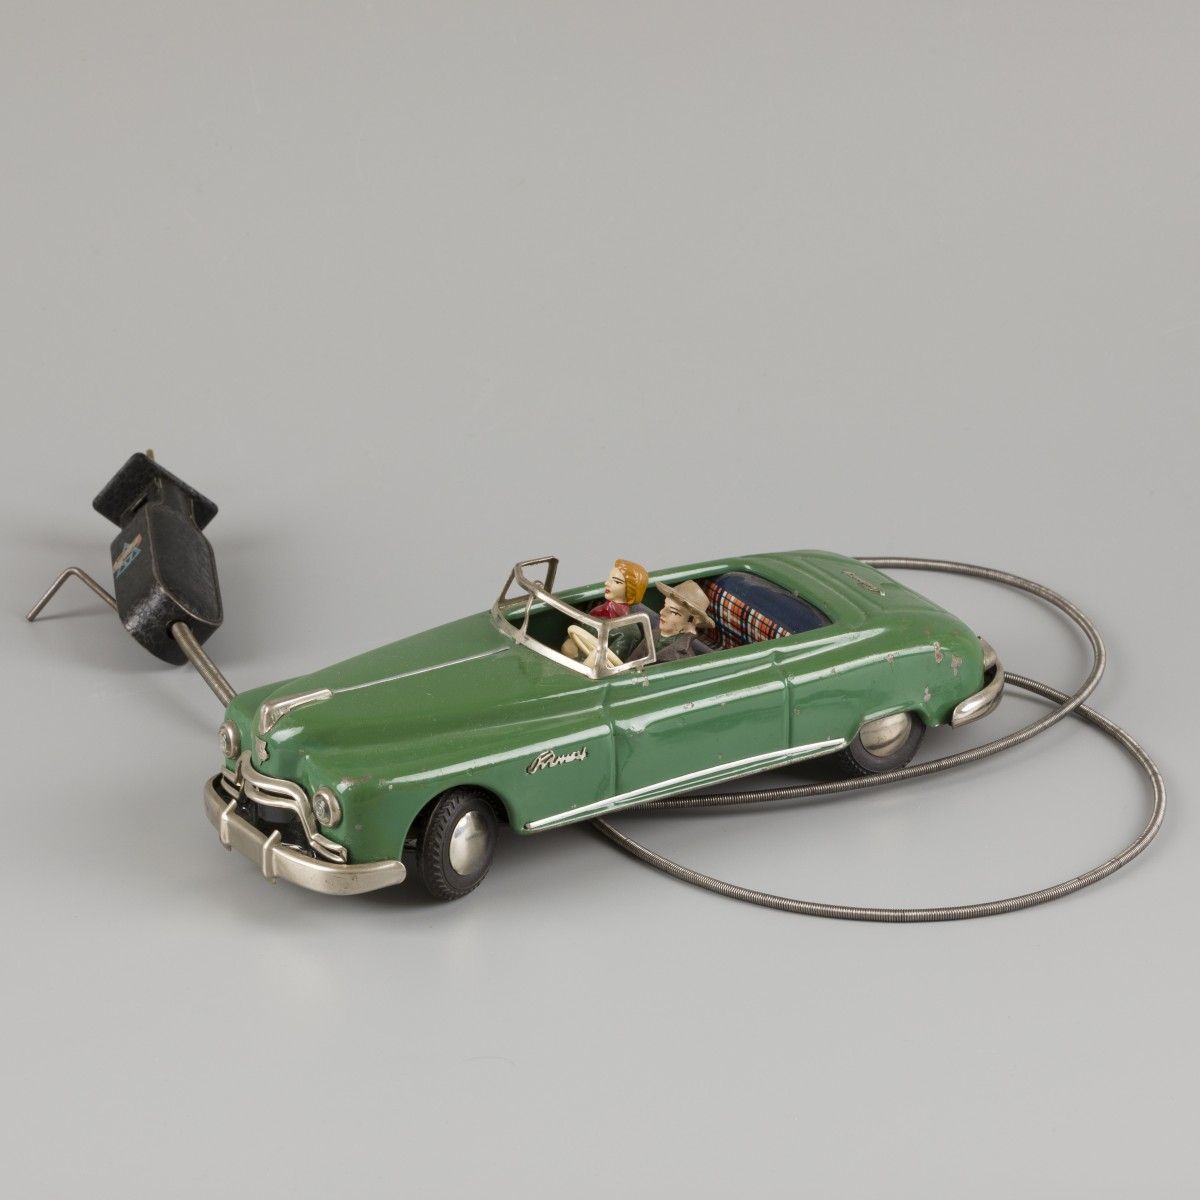 Arnold cable remote control tin toy car Completo con los dos pasajeros y en buen&hellip;